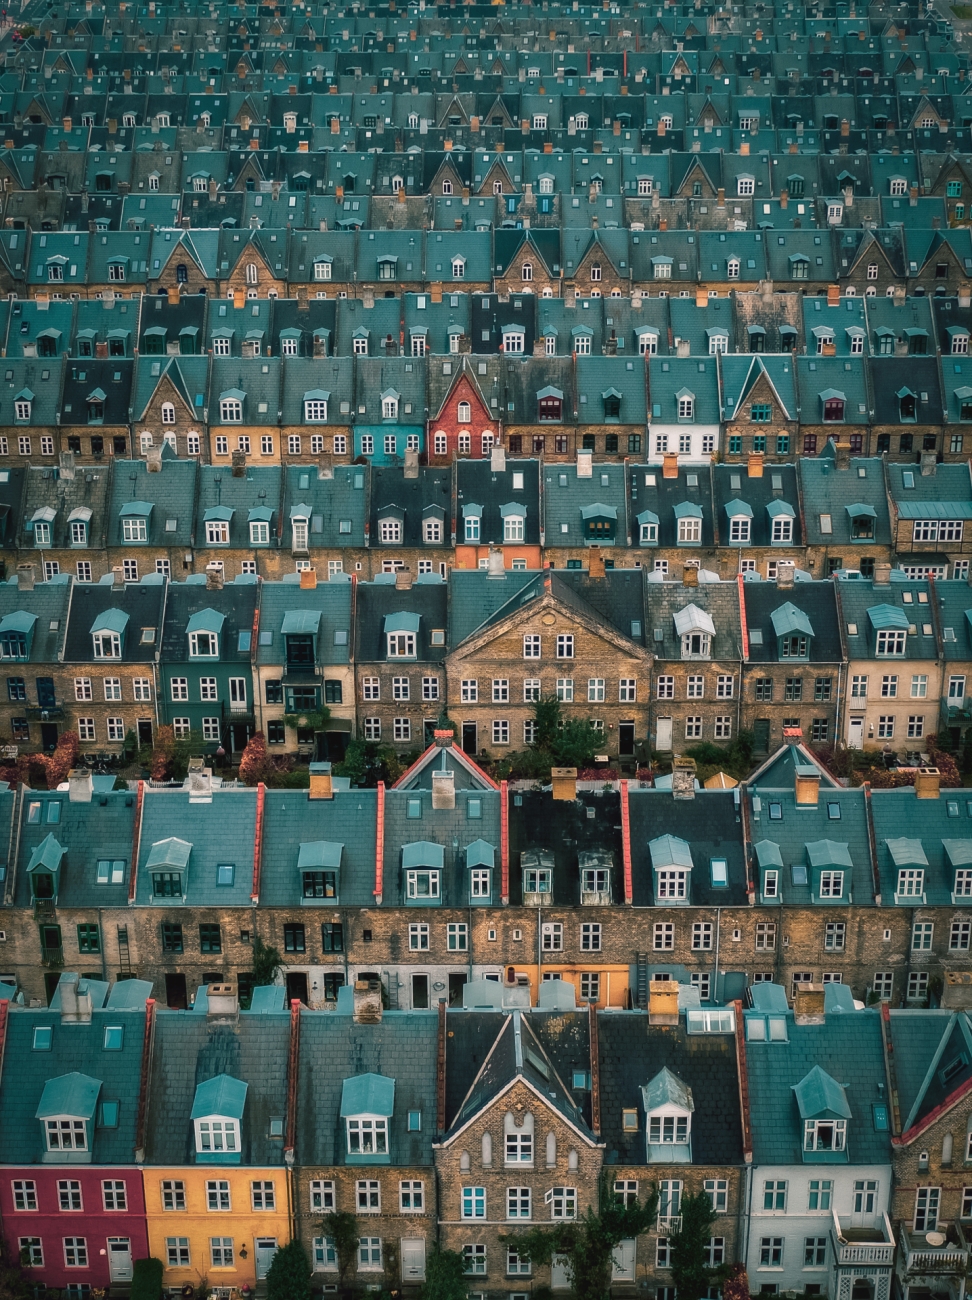 Βραβείο στην κατηγορία Αστικό. Οι σκεπές της γειτονιάς Kartoffelraekkerne στην Κοπεγχάγη. Η γειτονιά χτίστηκε στα τέλη του 1800 για εργατικές κατοικίες. Σήμερα είναι μία από τις πιο περιζήτητες περιοχές στην δανέζικη πρωτεύουσα 